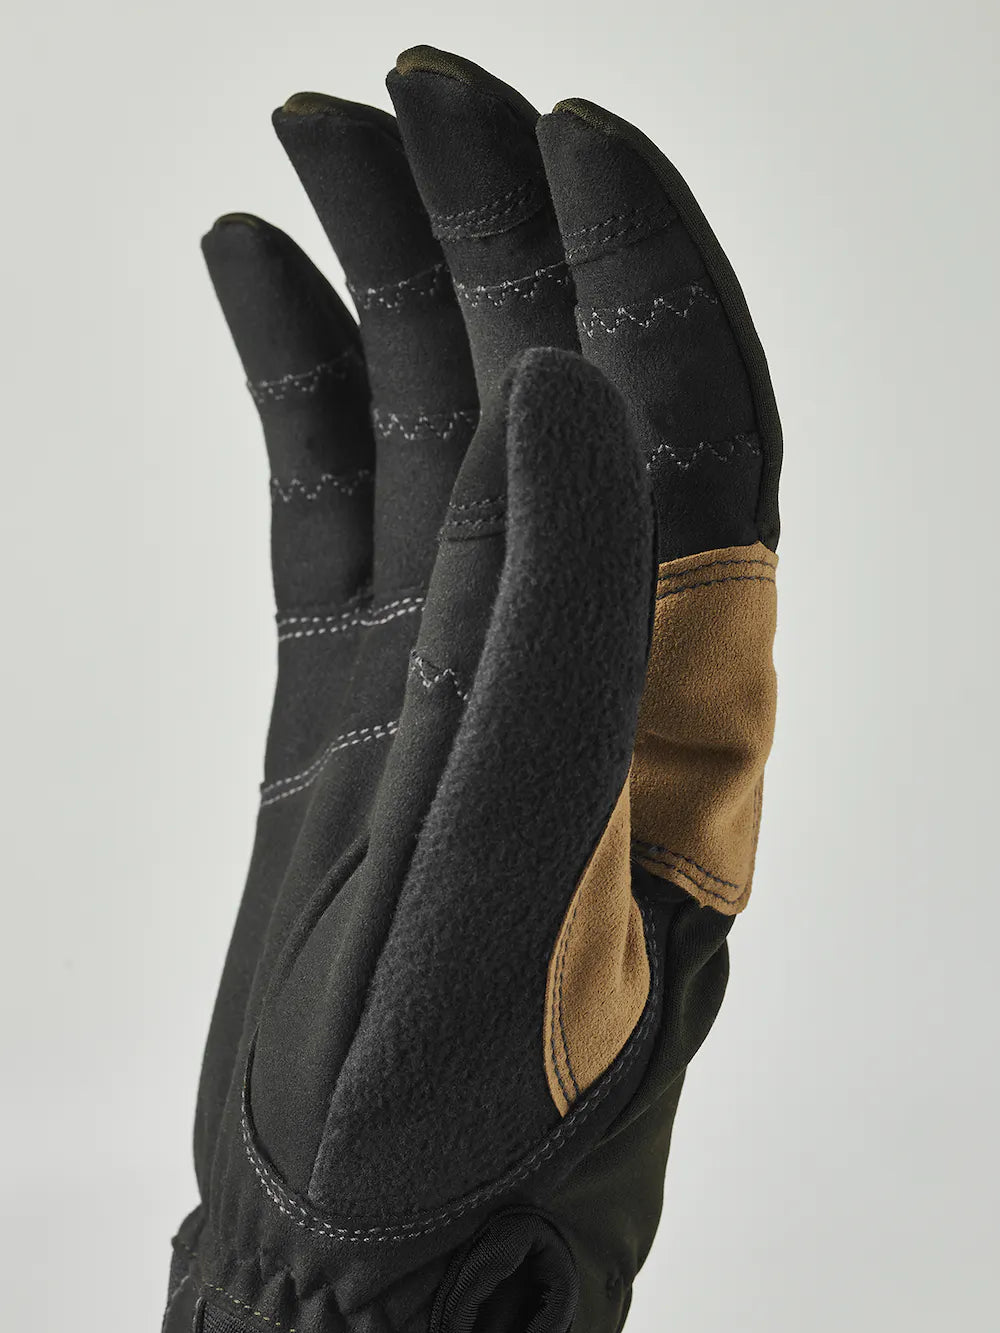 Ergo Grip Active Wool Terry - 5 finger (Size 10) - Dark forest / Black